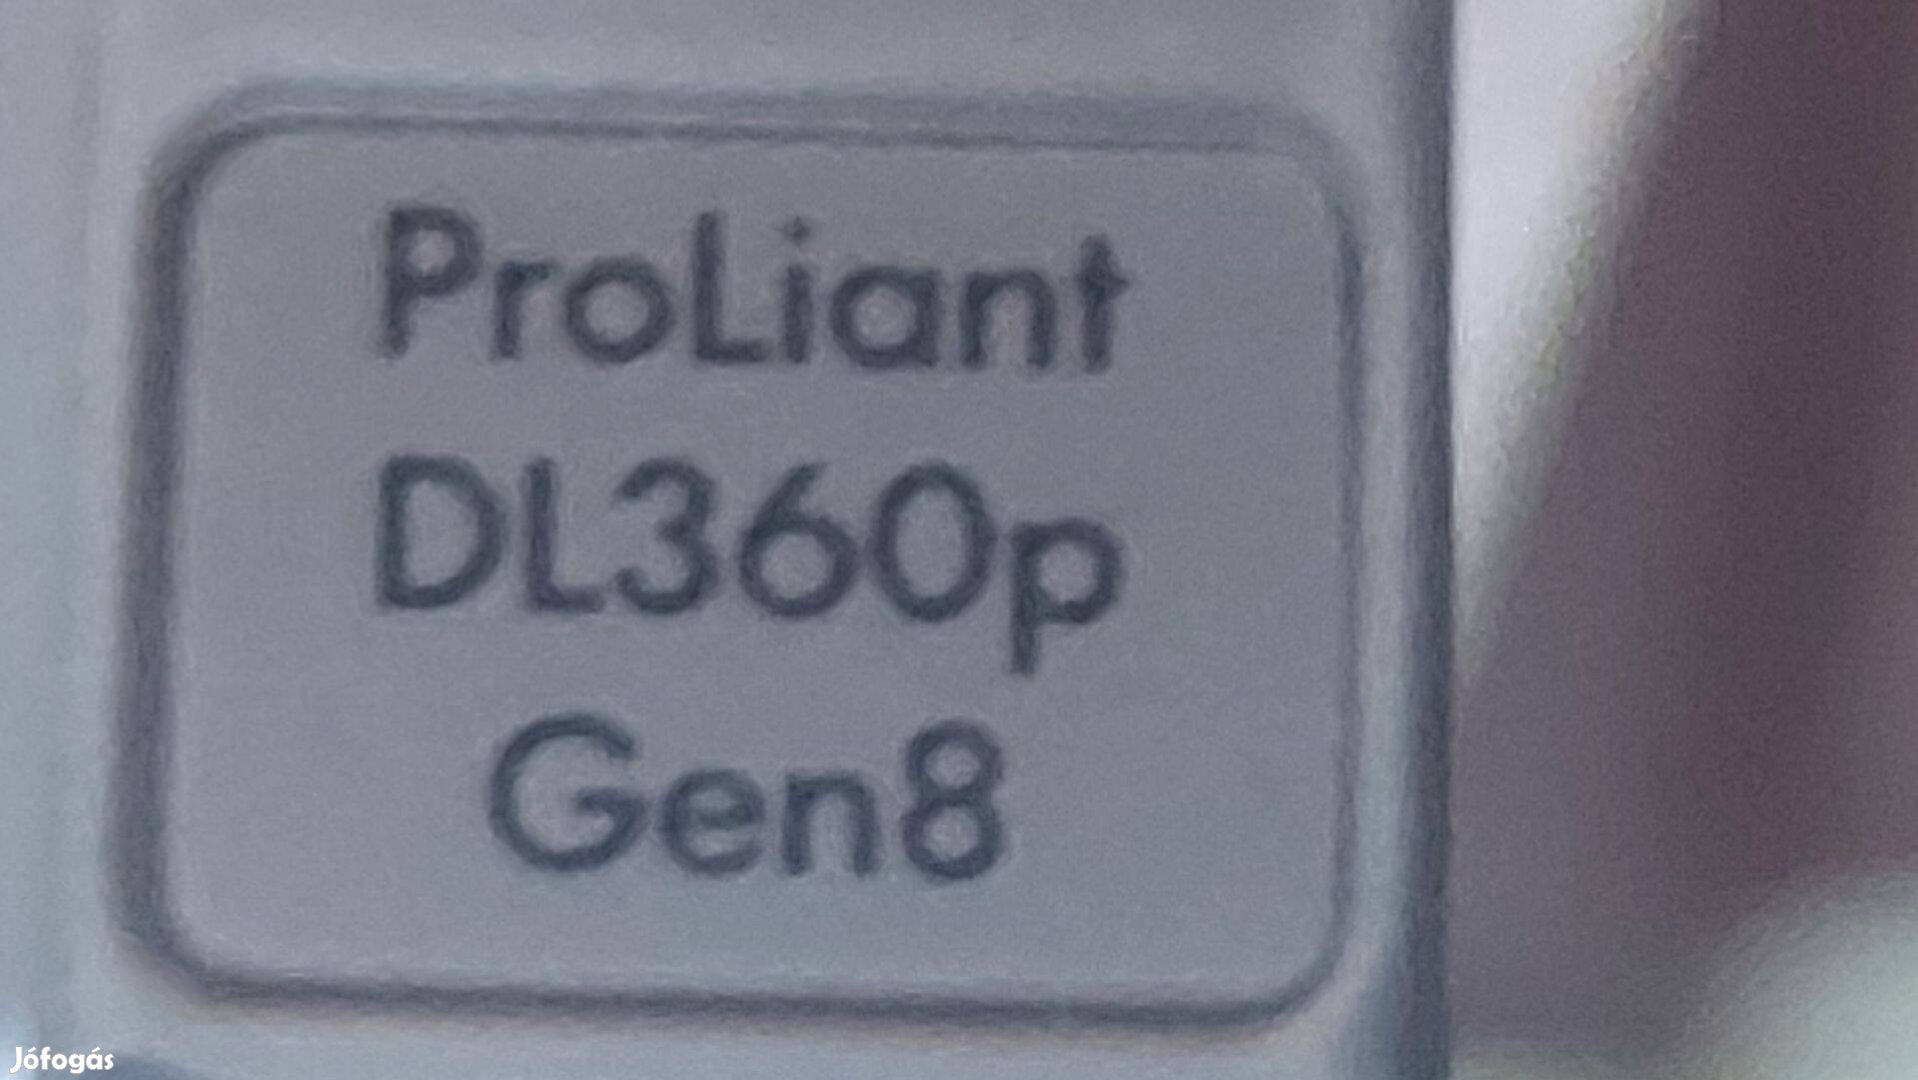 Proliant DL 360p Gen8 szerver server